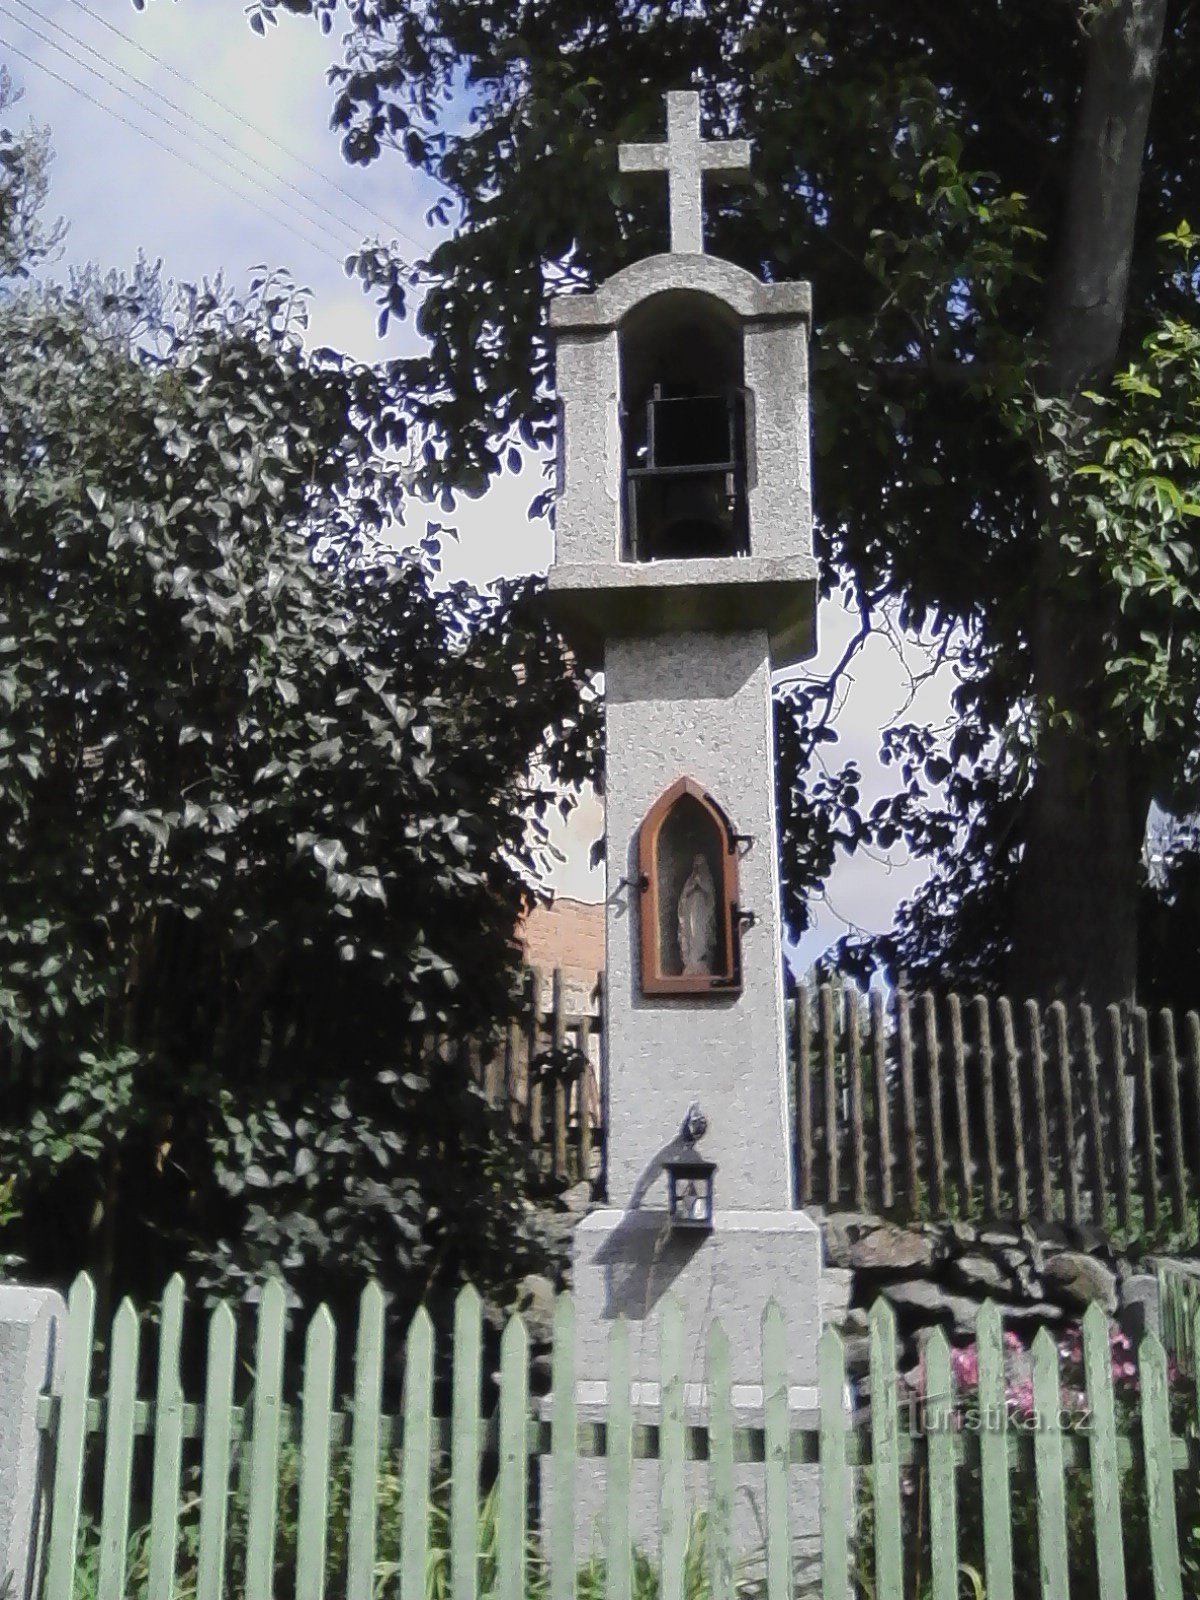 2. ヴェレティンの石造りの鐘楼。